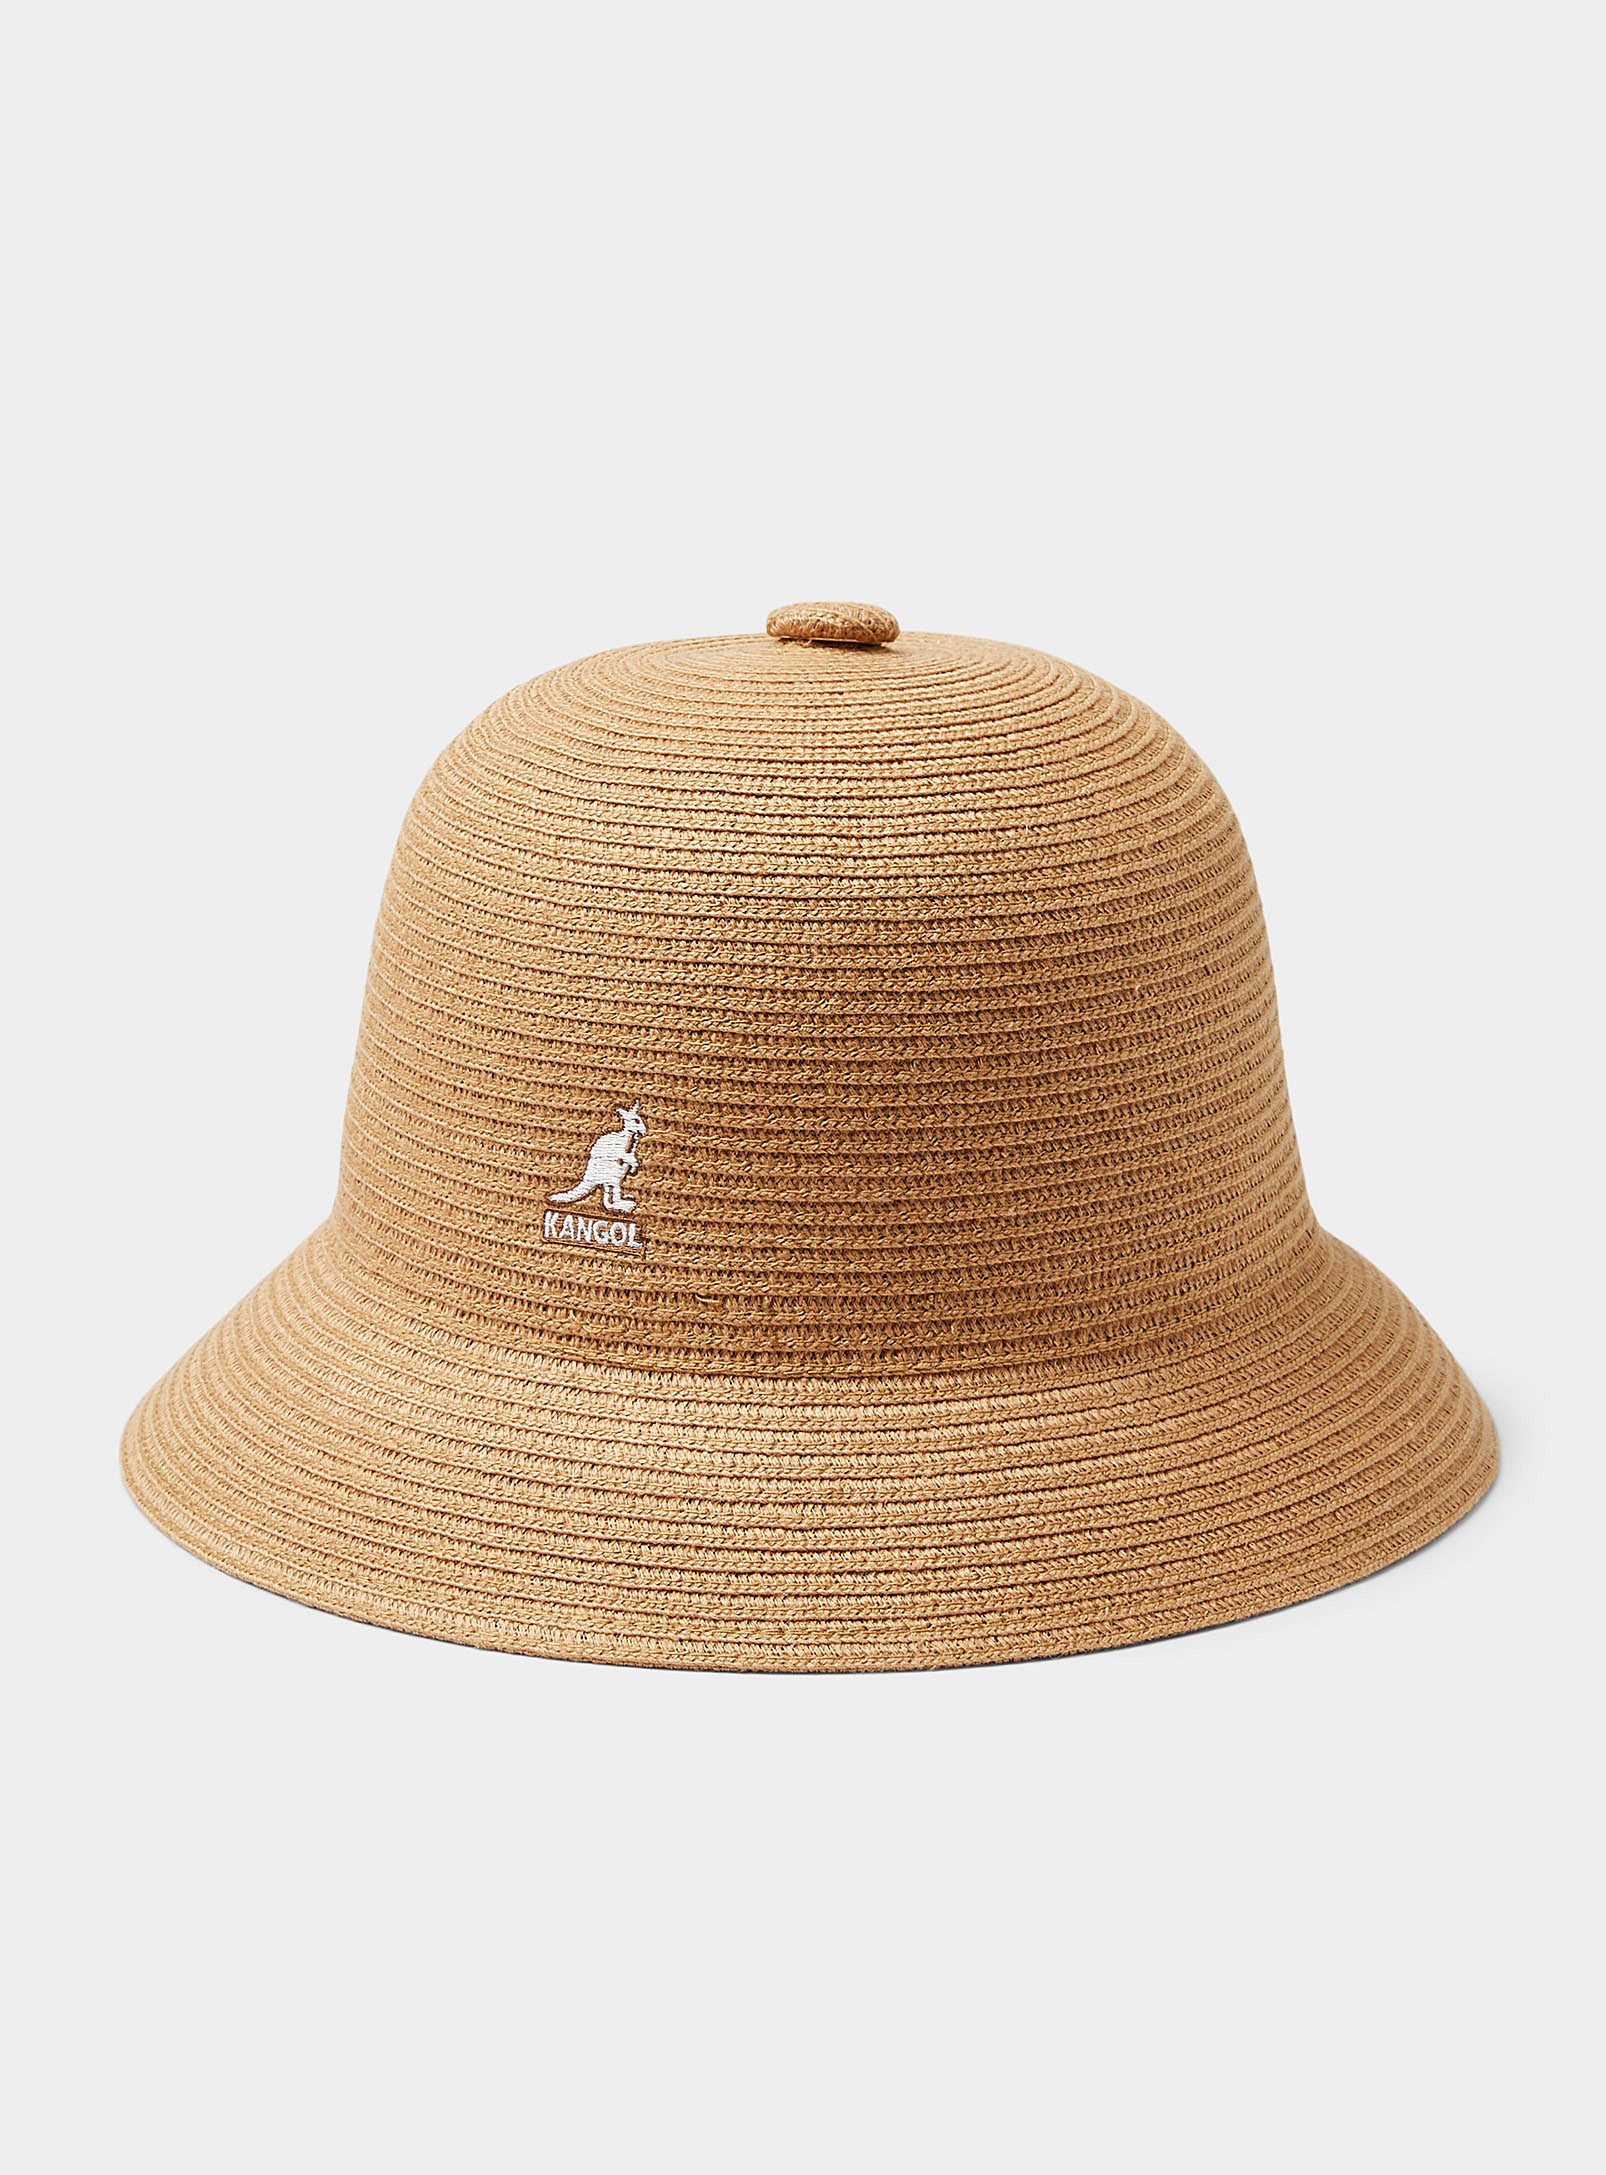 Kangol - Men's Woven linen bucket hat